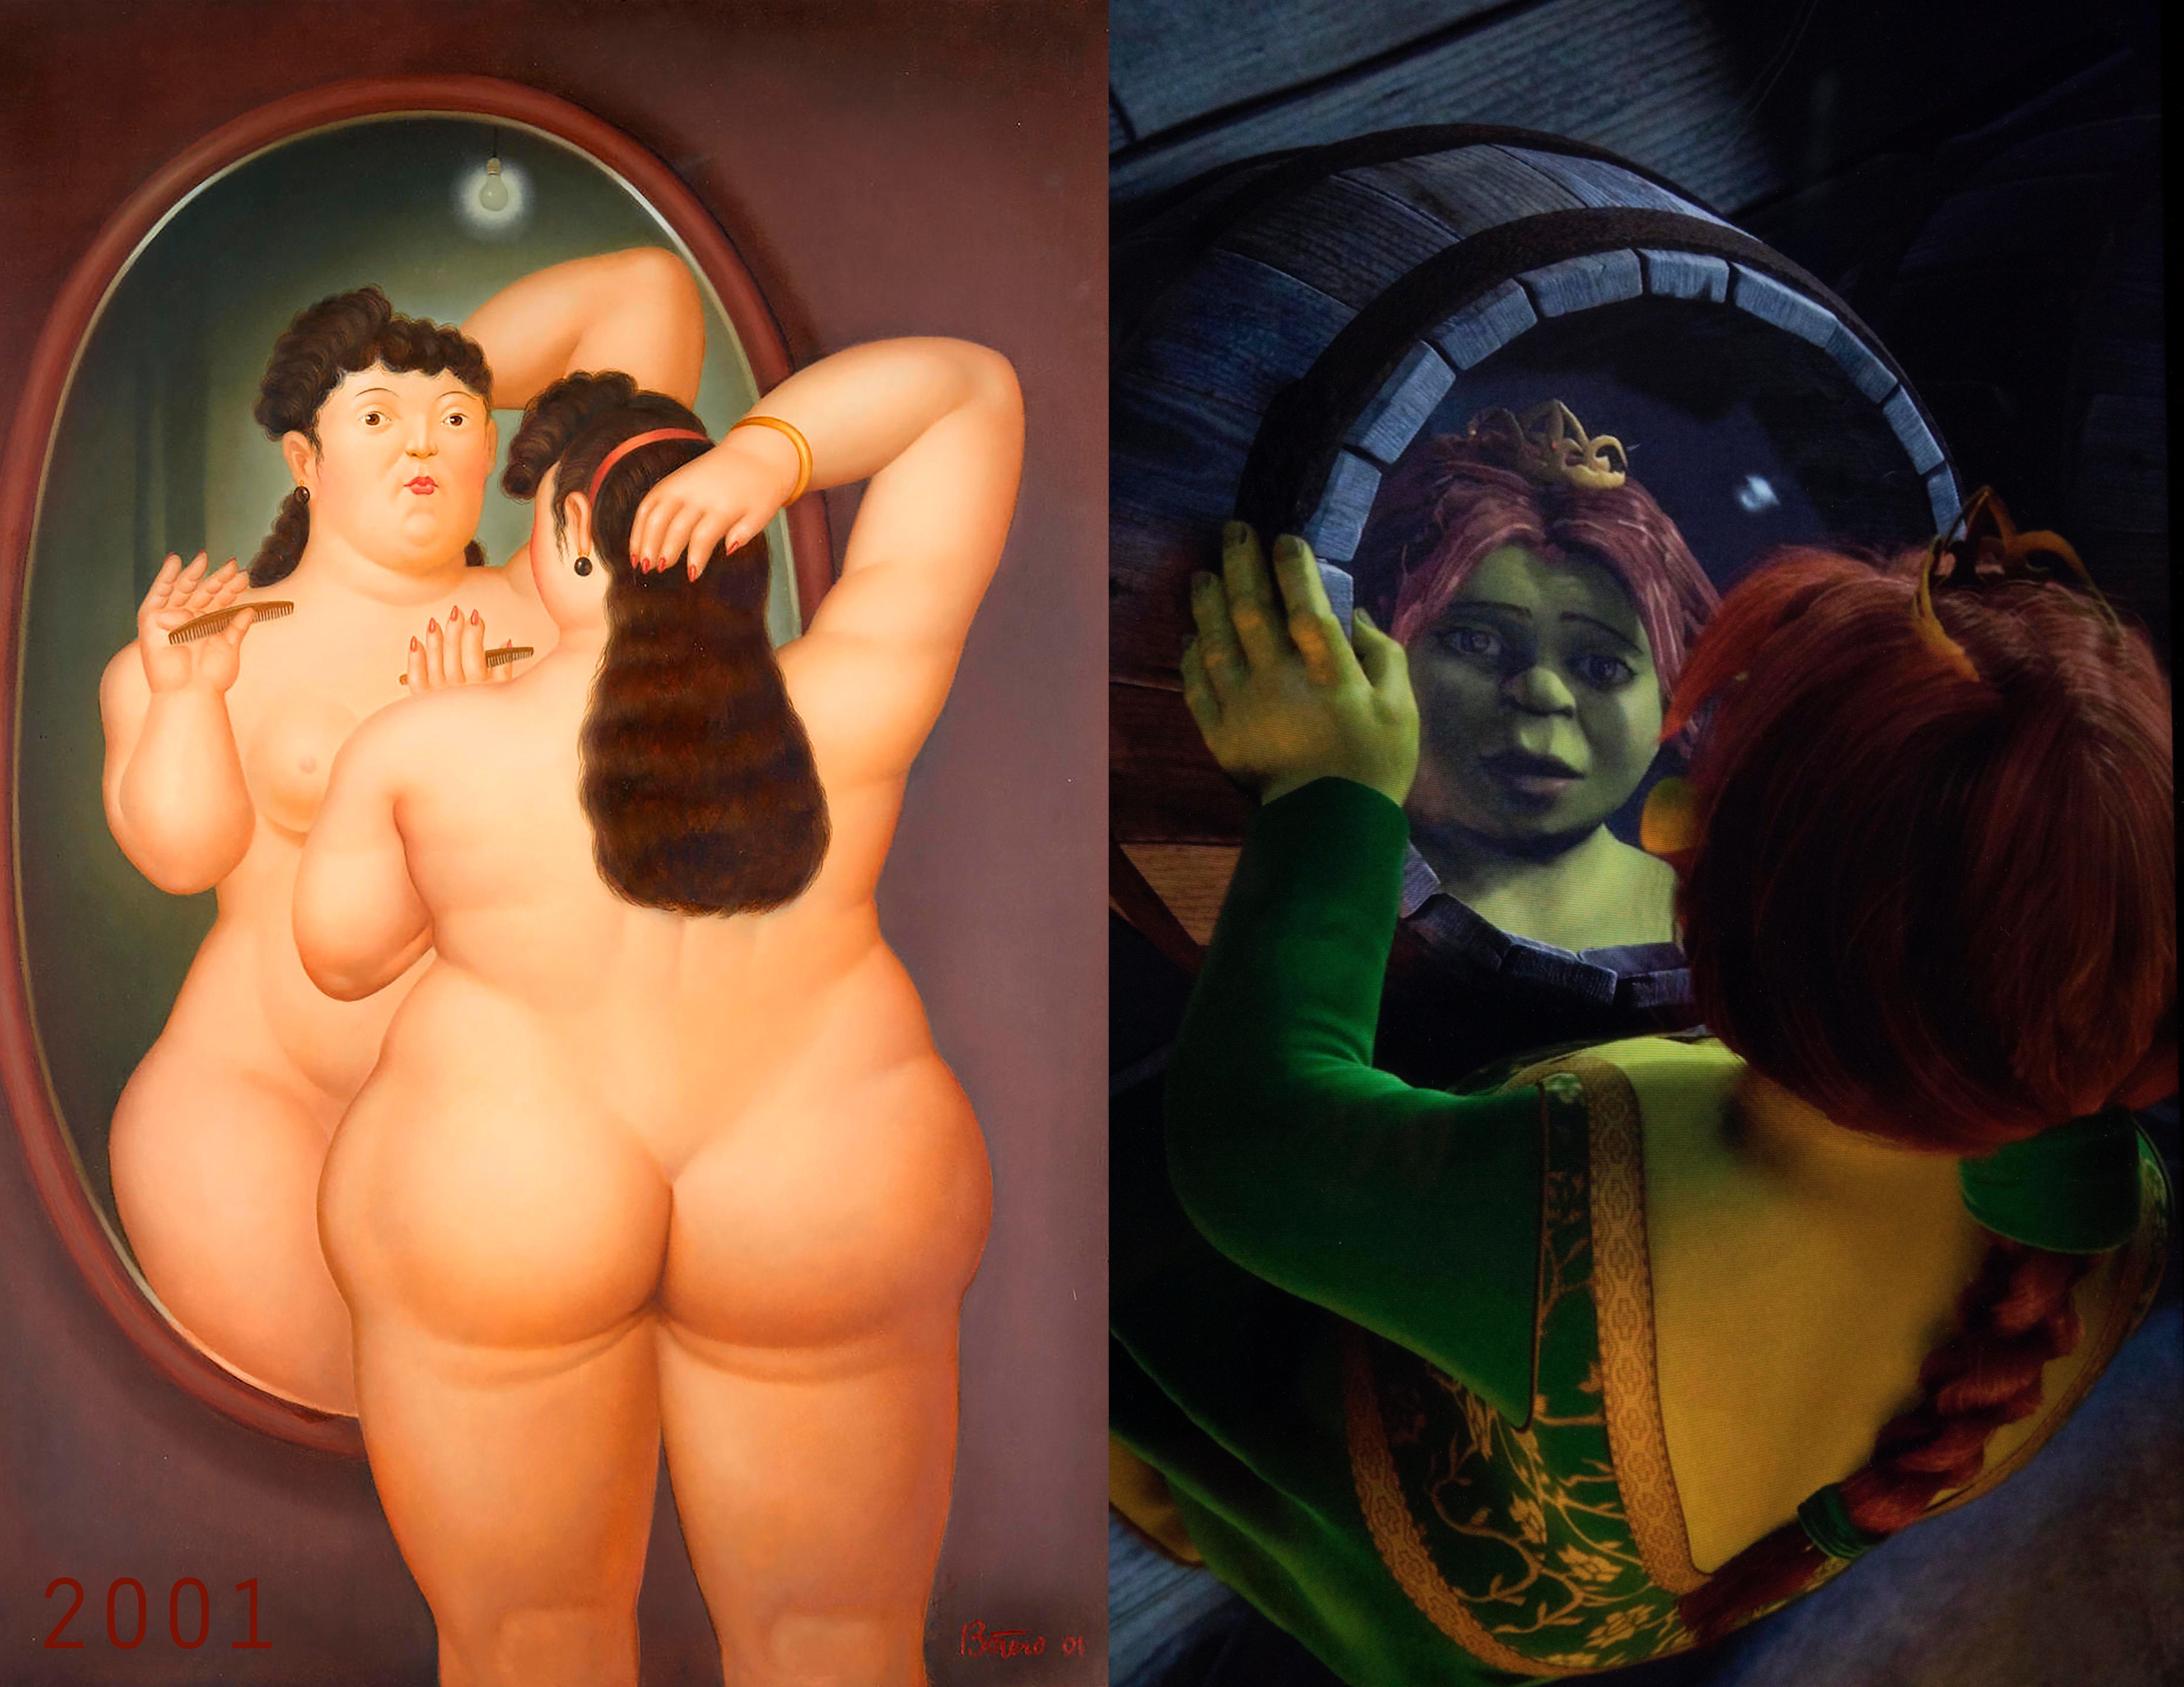 Bonnie Lautenberg Figurative Print - 2001 - Shrek - Fernando Botero, Nude in Mirror, Archival Pigment Print